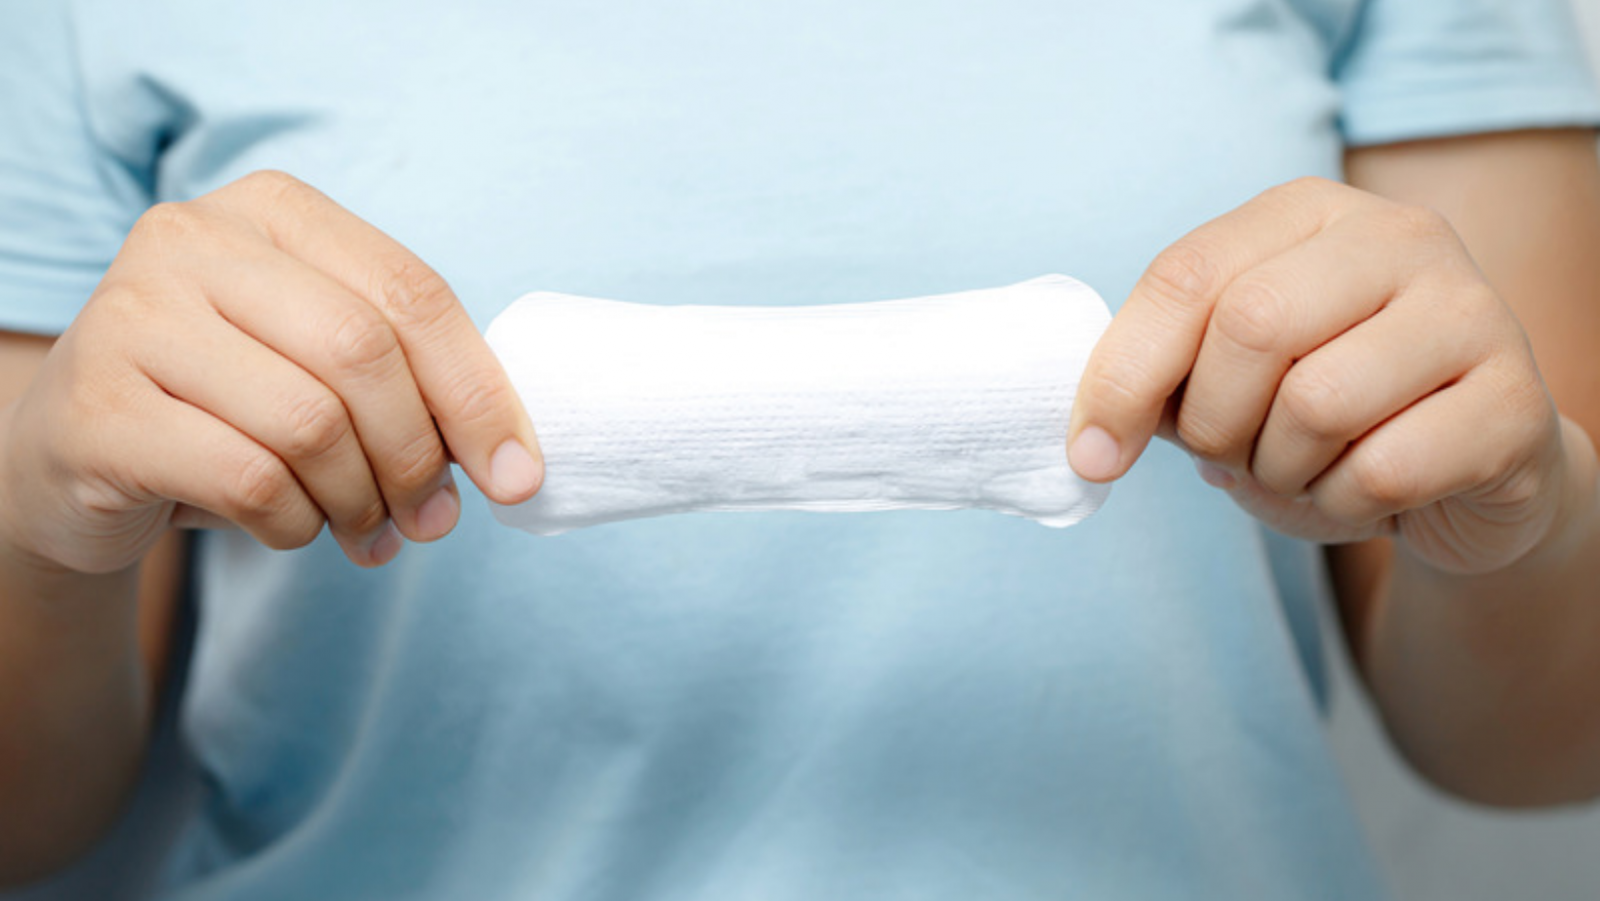 用法建議和衛生棉一樣，2-3小時或是有分泌物時就換一次，才能保持清爽又不容易弄髒內褲。